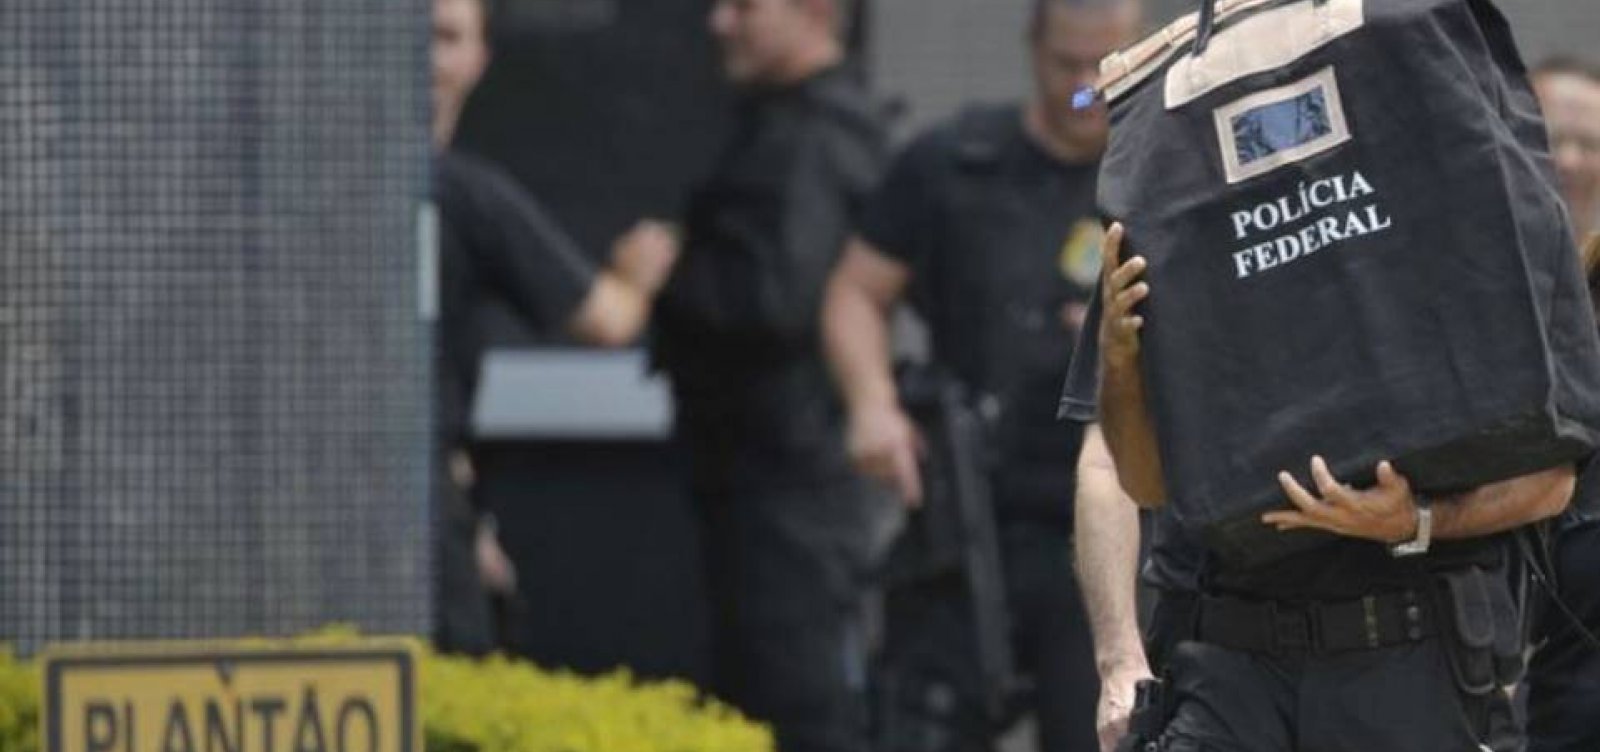 Polícia Federal deflagra operação em Salvador e Feira de Santana 